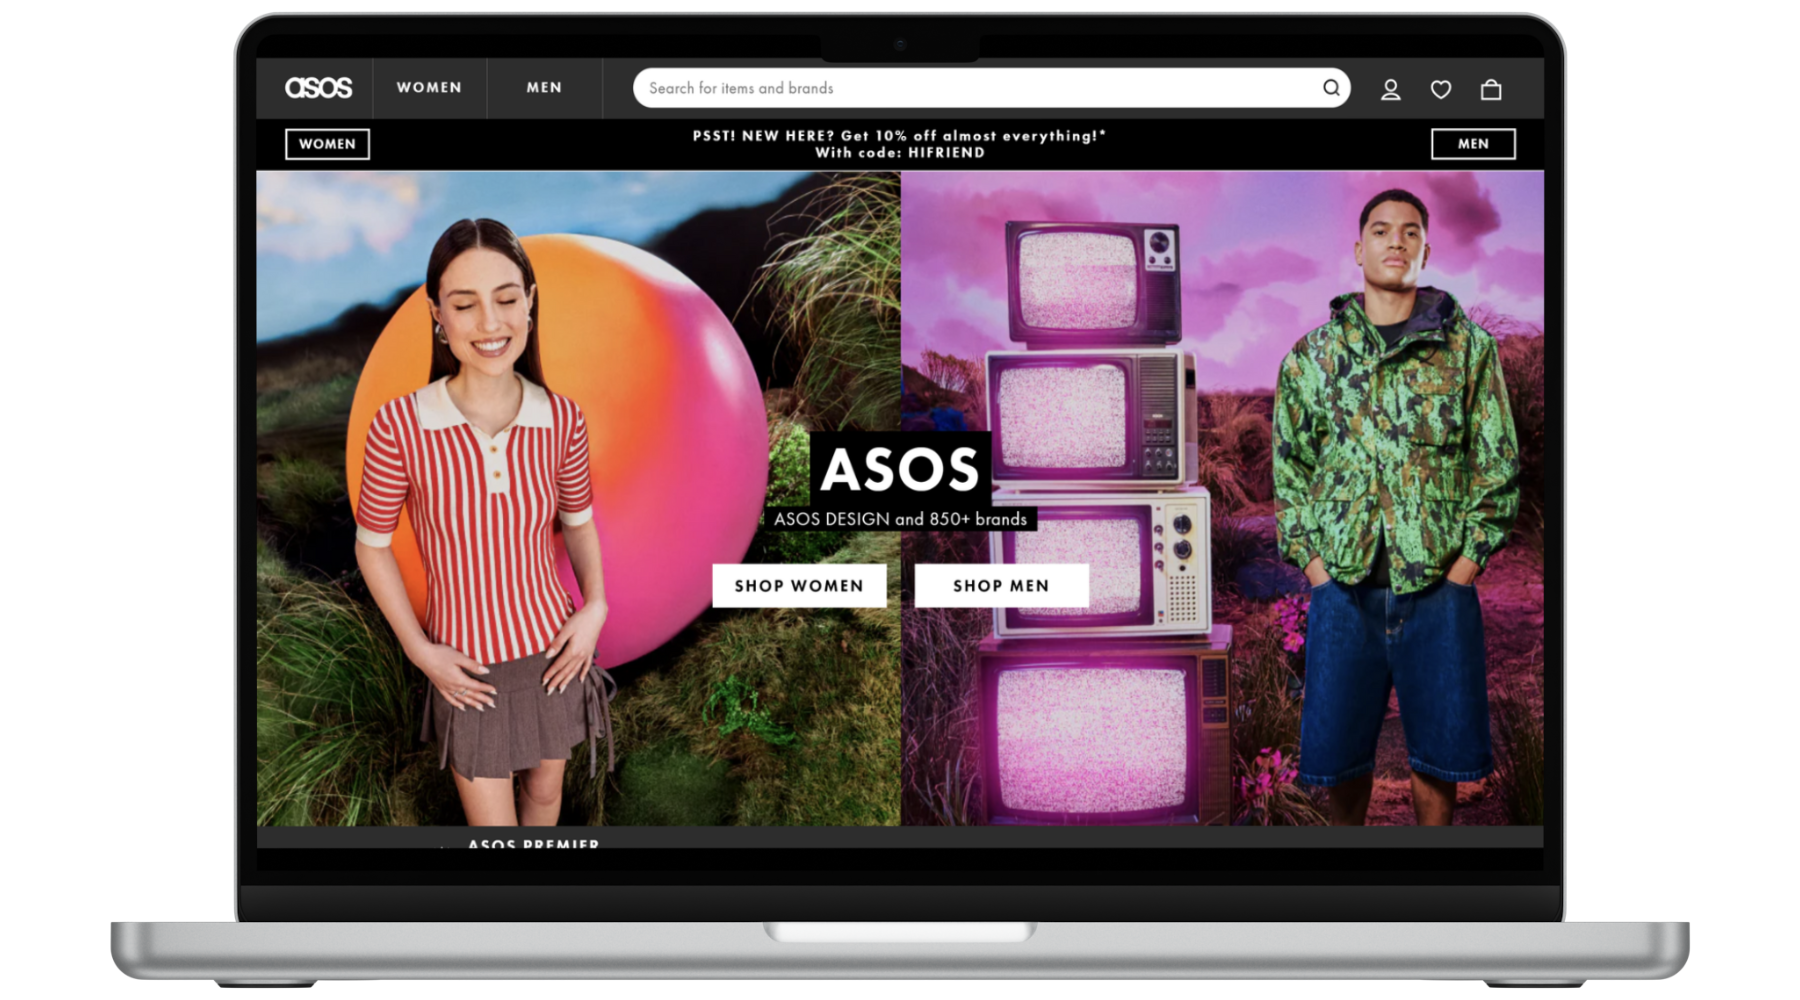 ASOS Website Homepage on Laptop